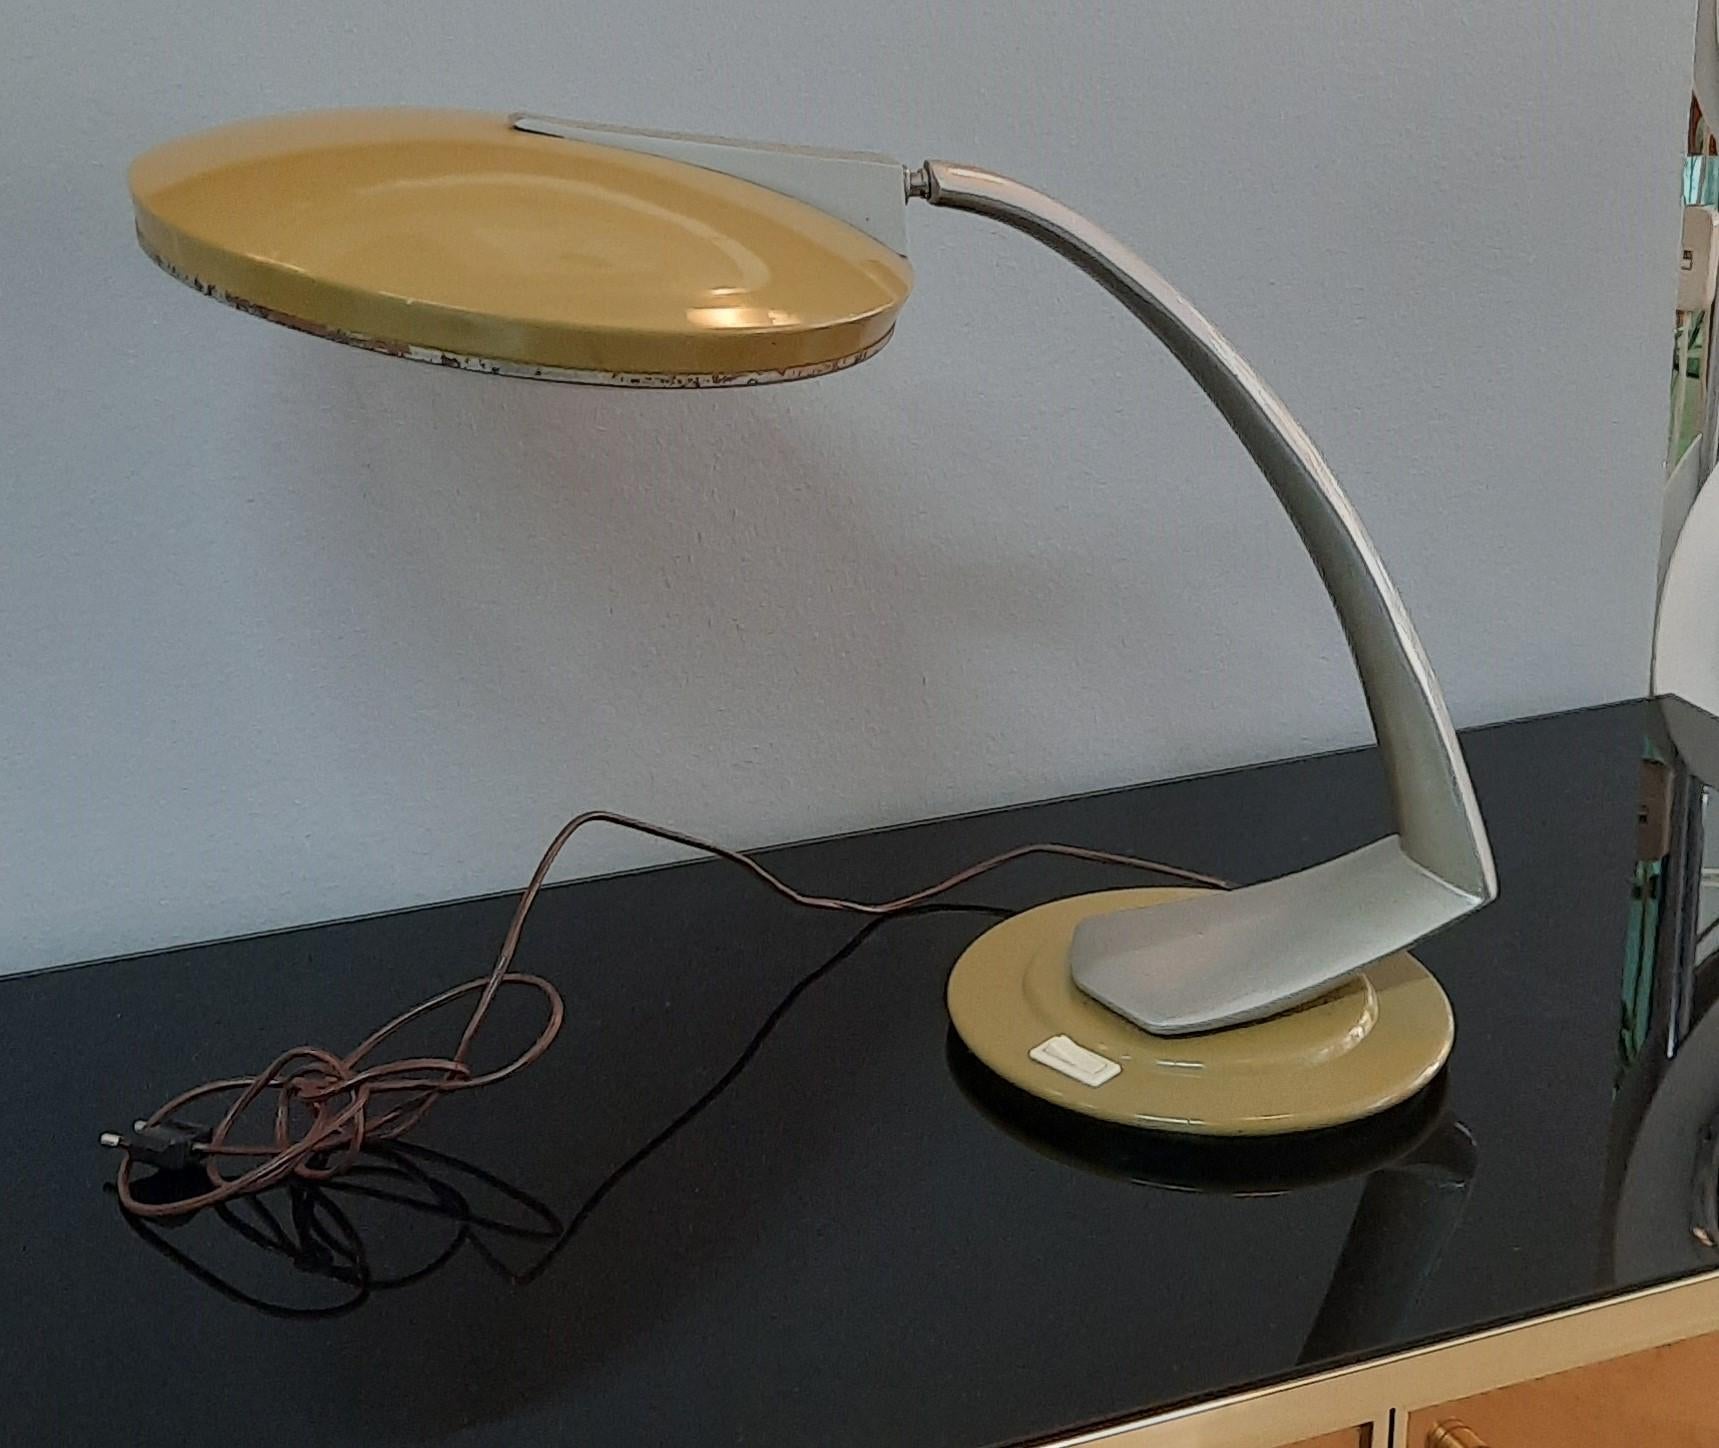 Fantastische Boomerang-Lampe, hergestellt von FASE und entworfen von Pedro Martín García, Modell in den Farben senepe/verde und grigio, mit Paralume und orientierbarem Bügel, die das Spielen in verschiedenen Stellungen ermöglichen.